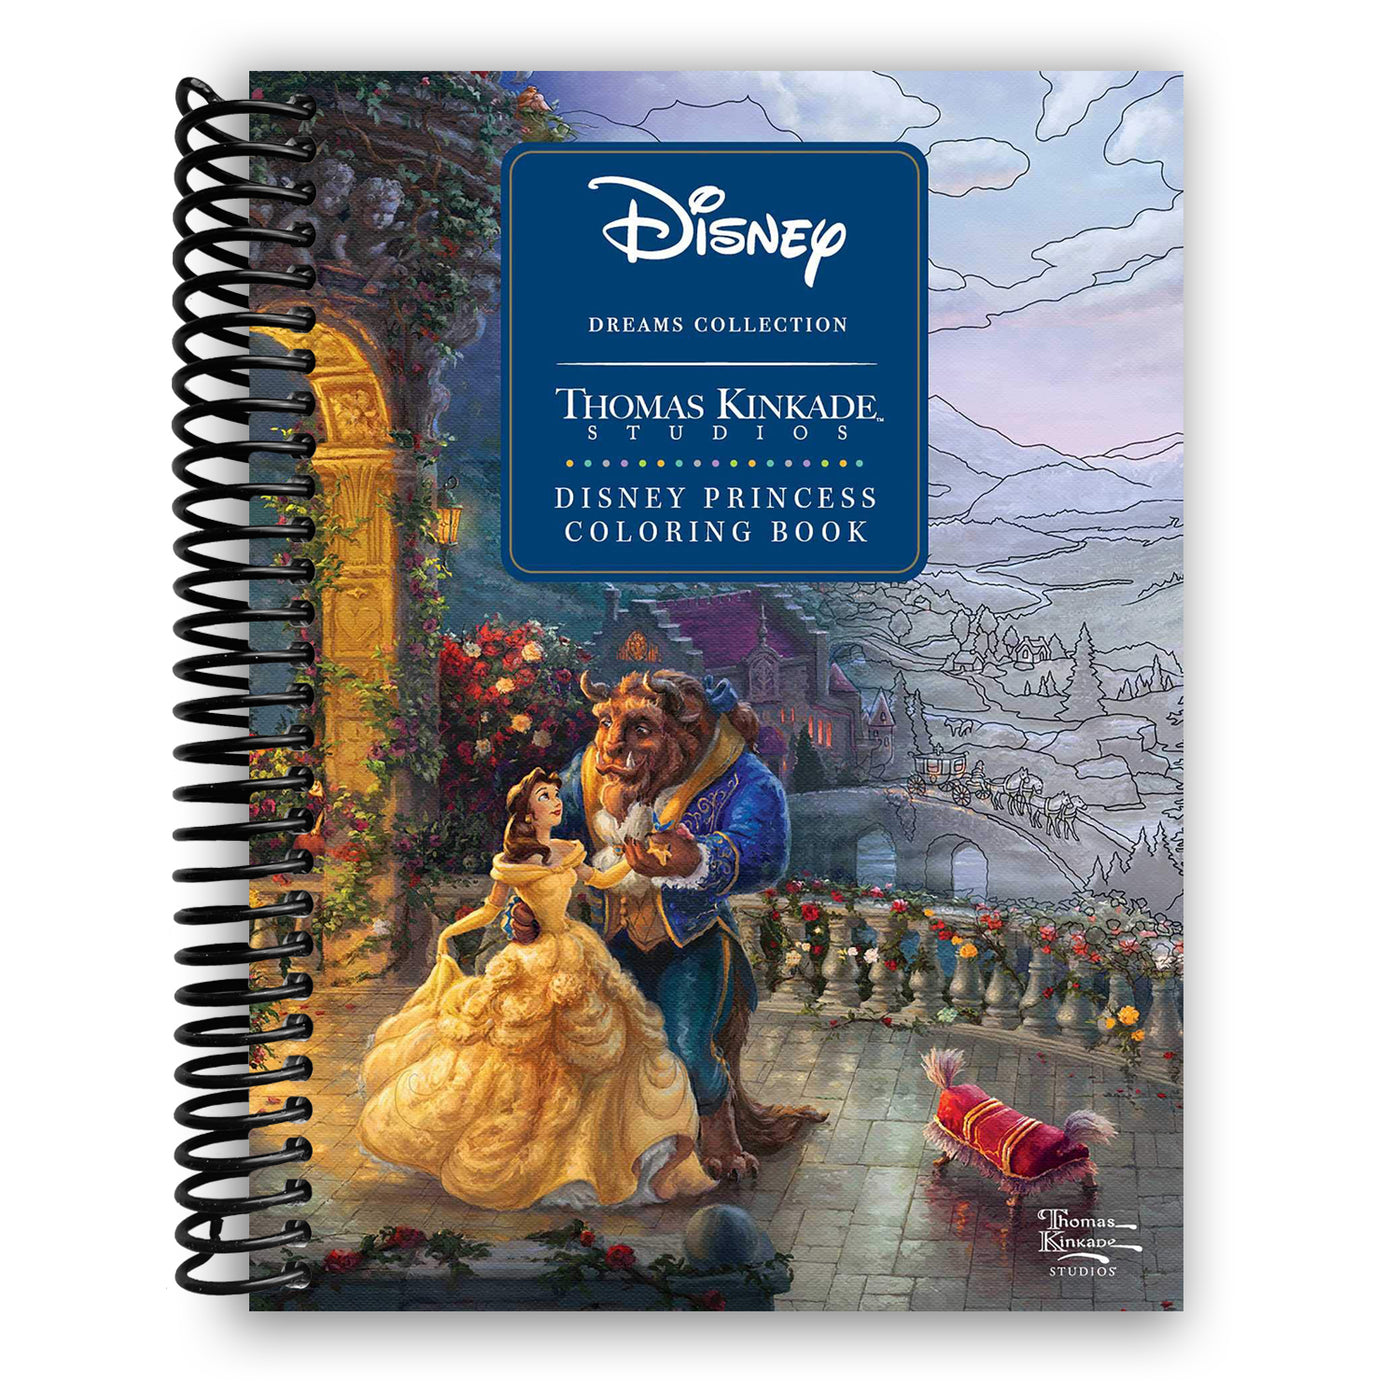 Disney Dreams Collection Thomas Kinkade Studios Disney Princess Coloring Book (Spiral Bound)